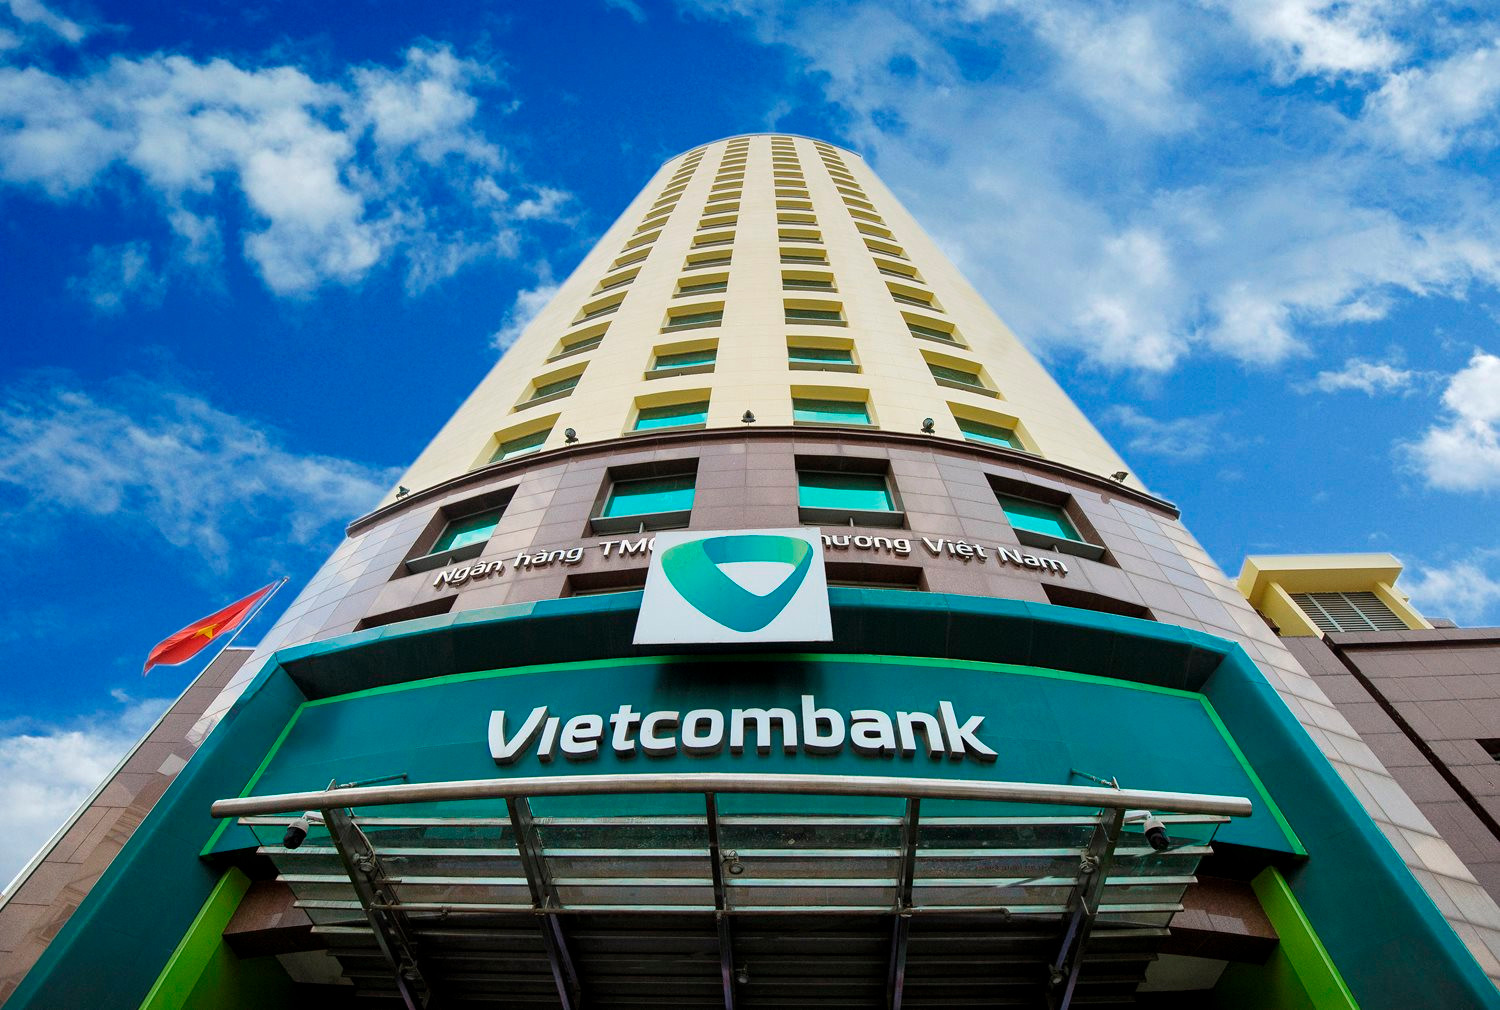 12 ngân hàng Việt lọt Top 500 ngân hàng đắt giá nhất hành tinh, Vietcombank vượt mặt Agribank dẫn đầu thị trường Việt Nam, VIB lần đầu lọt danh sách - Ảnh 1.